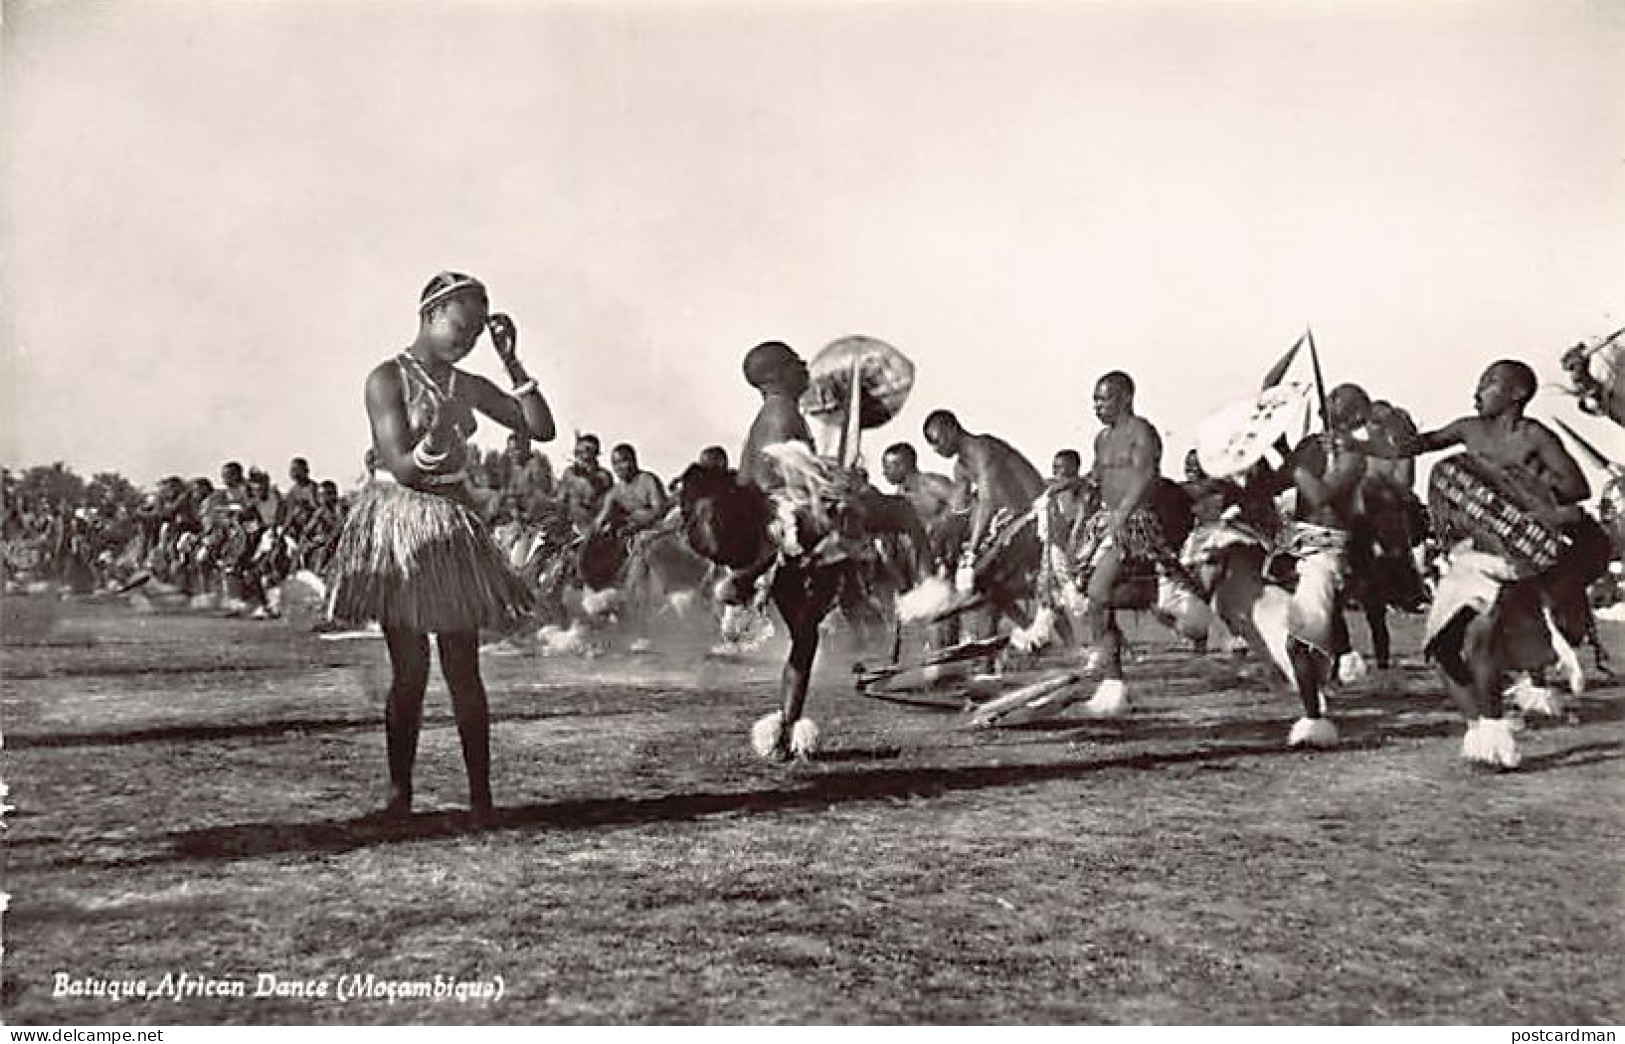 MOÇAMBIQUE Mozambique - Batuque African Dance - REAL PHOTO - Ed. / Publ. M. S. & Co. 15 - Mosambik